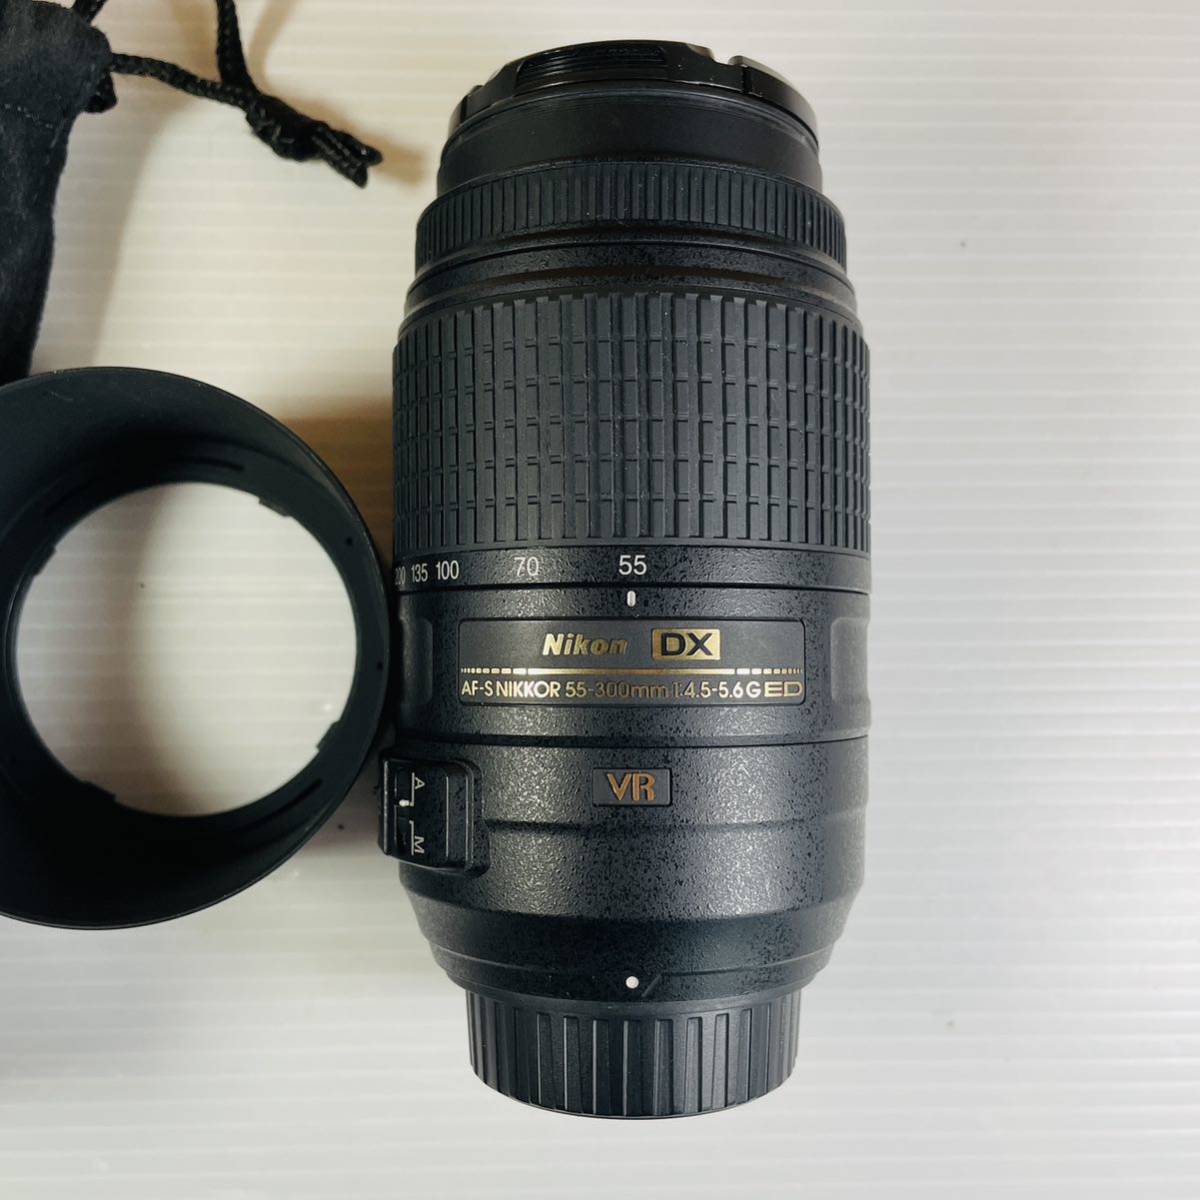 #120 Nikon DX AF-S NIKKOR 55-300mm 1:4.5-5.6G ED VR ニコン_画像2